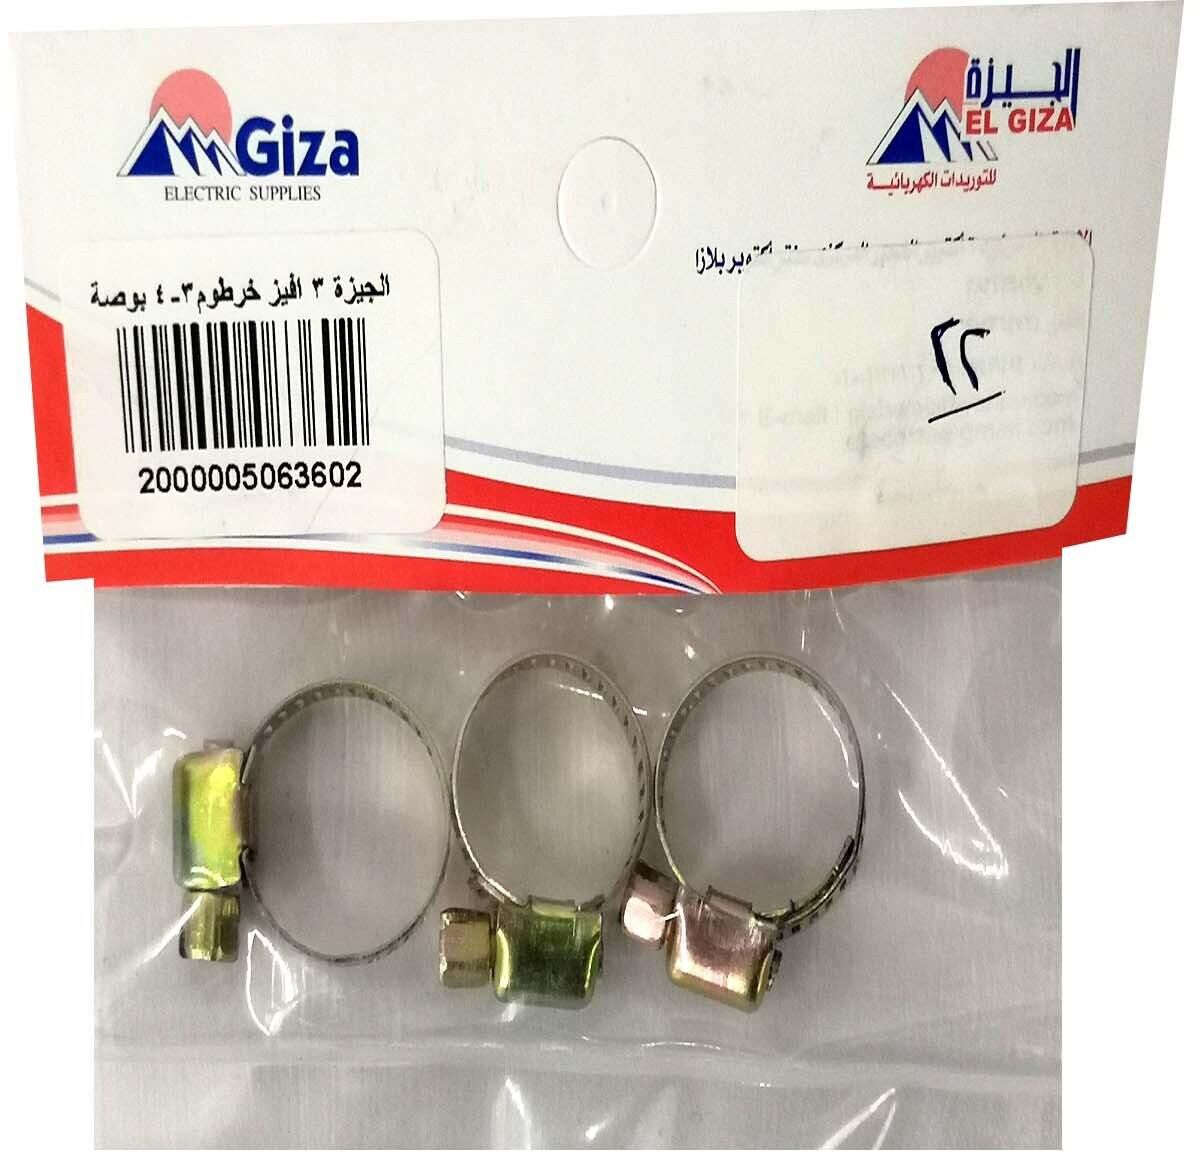 Giza Gas Hose Bolt - 0.75 Inch - 3 Pieces